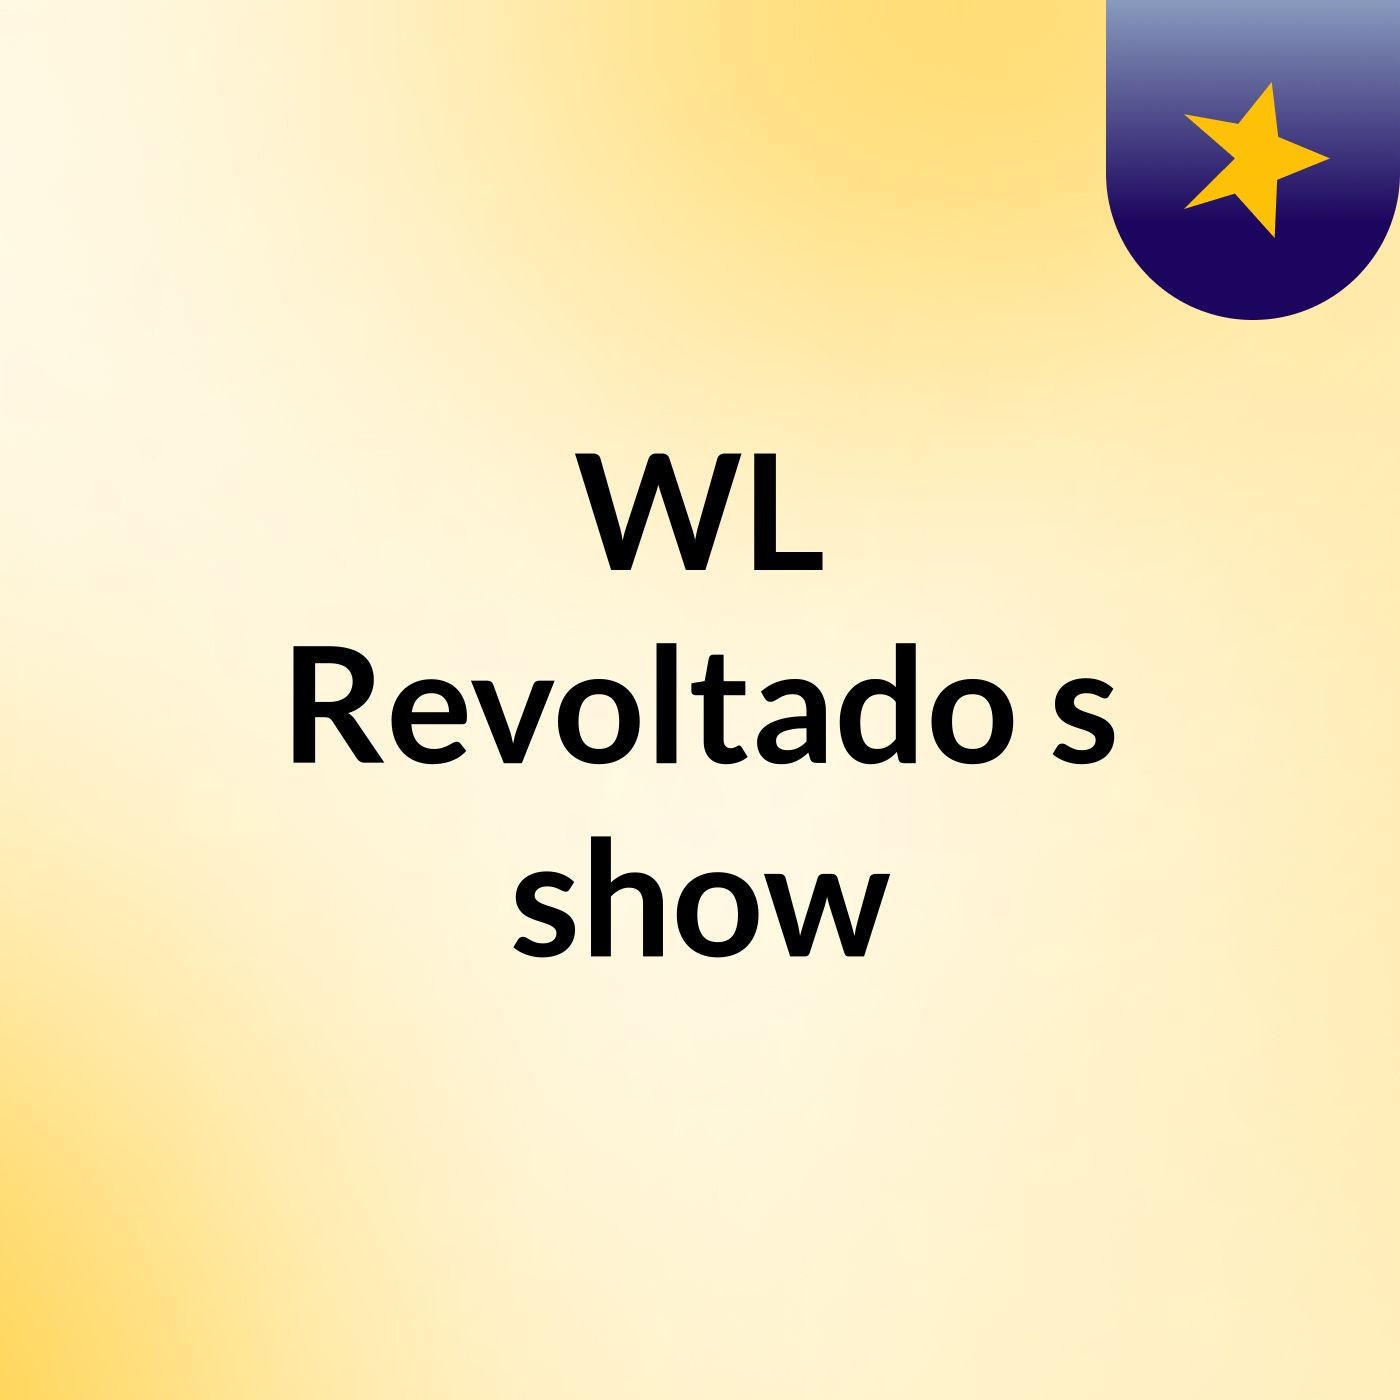 WL Revoltado's show